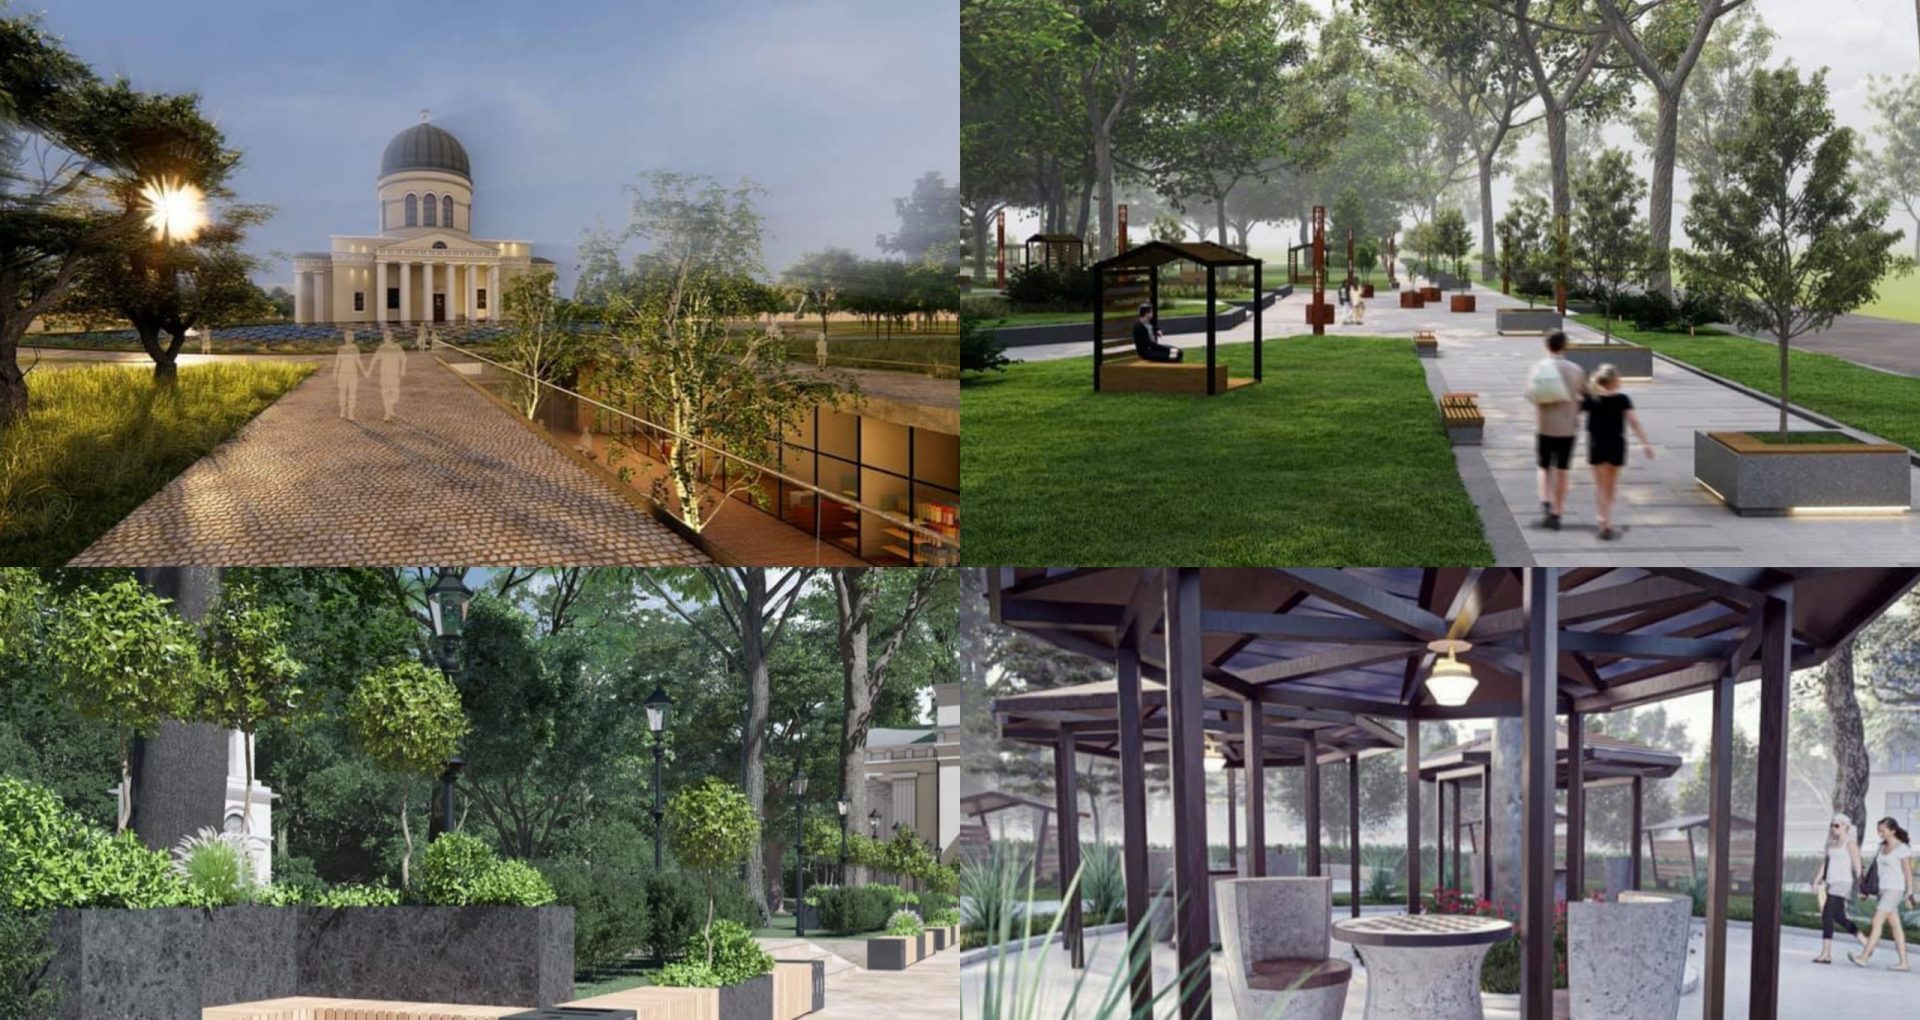 Concurs de proiecte pentru cele două parcuri din centrul capitalei: Grădina Publică și Parcul Catedralei